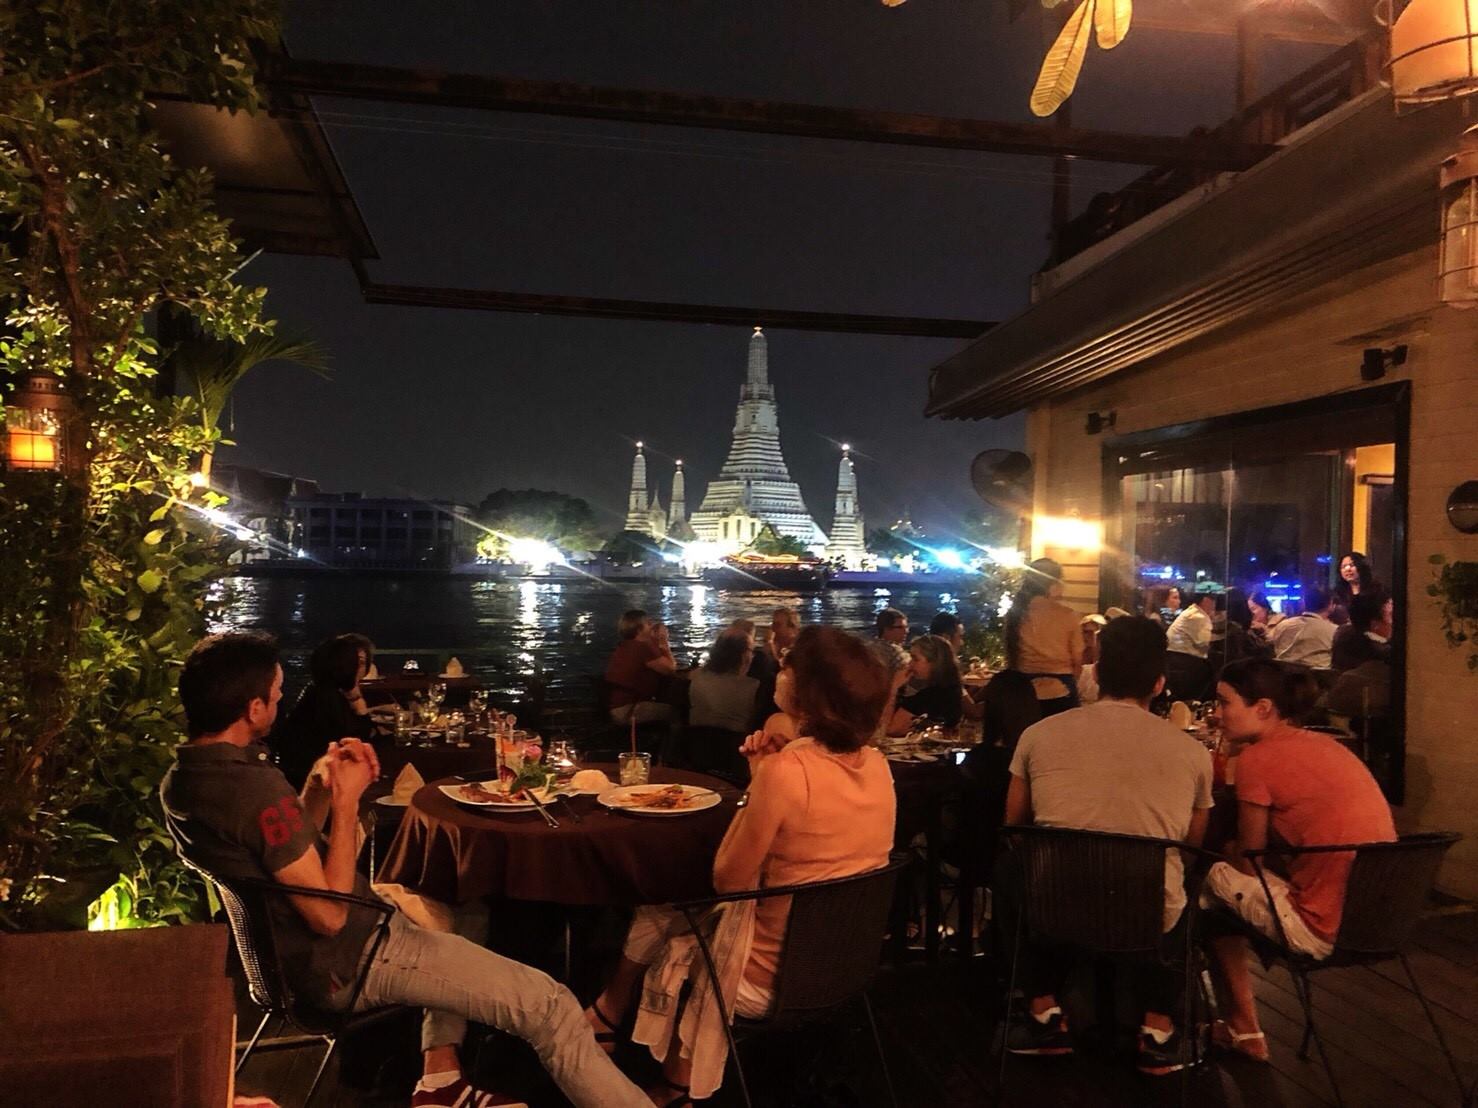 เดอะ เด็ค บายเดอะริเวอร์ (The Deck by Arun Residence) : กรุงเทพมหานคร (Bangkok)